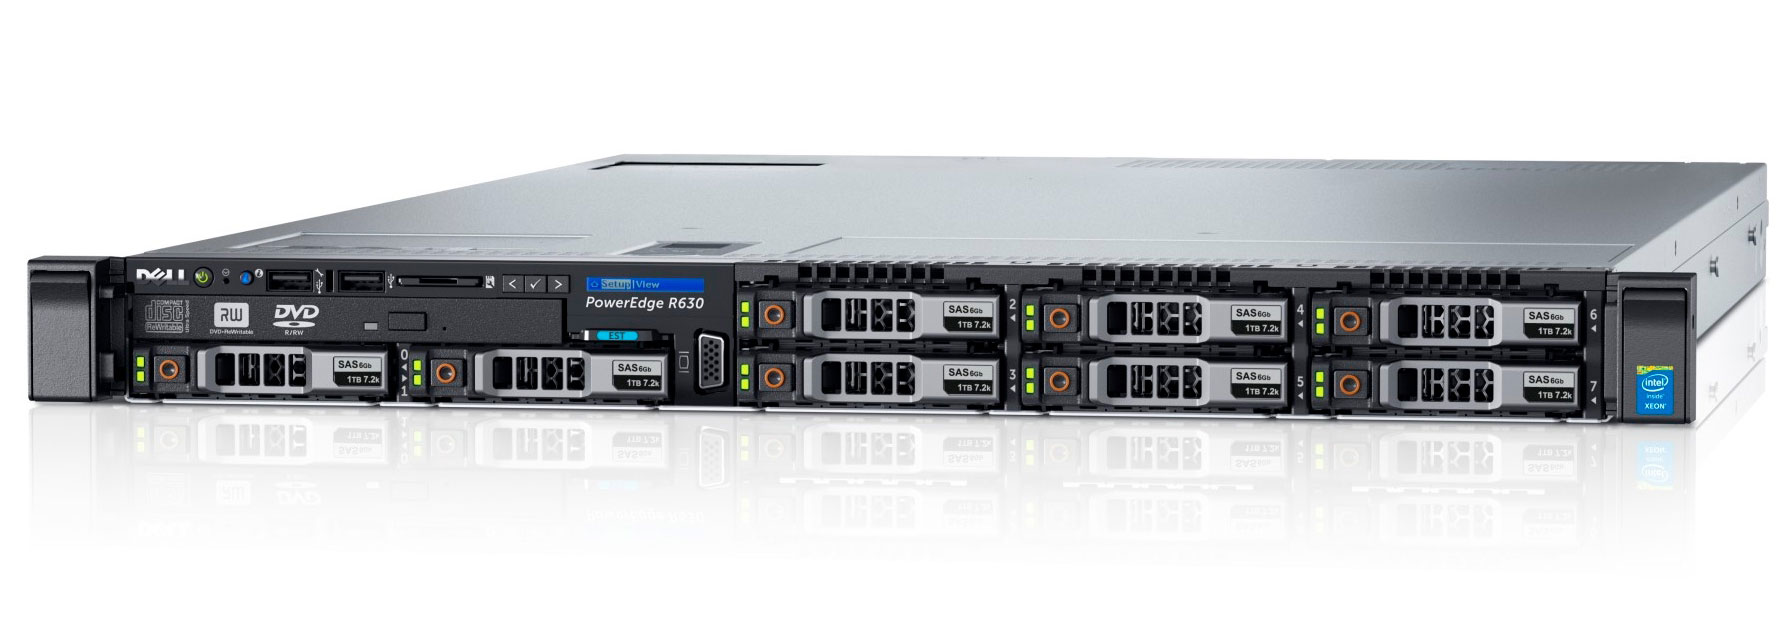 Подробное фото Сервер DELL PowerEdge R630 2*Xeon E5-2667v3 128Gb 2133P DDR4 8x noHDD 2.5" SAS RAID Perc H730, 2*PSU